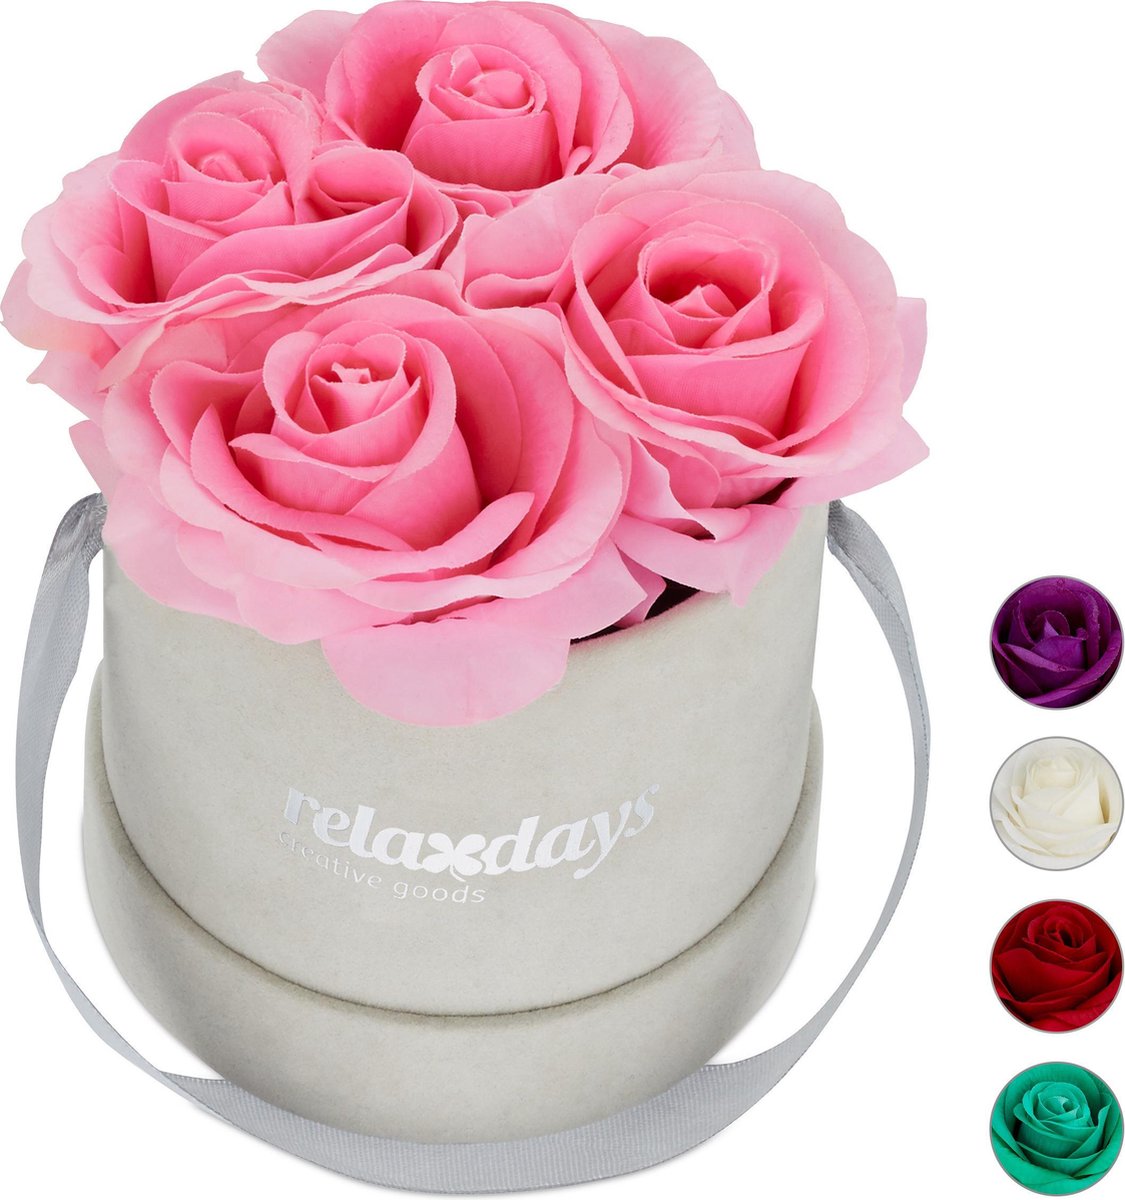 Relaxdays flowerbox rozenbox rozen in box 4 kunstbloemen bloemenboeket decoratie roze